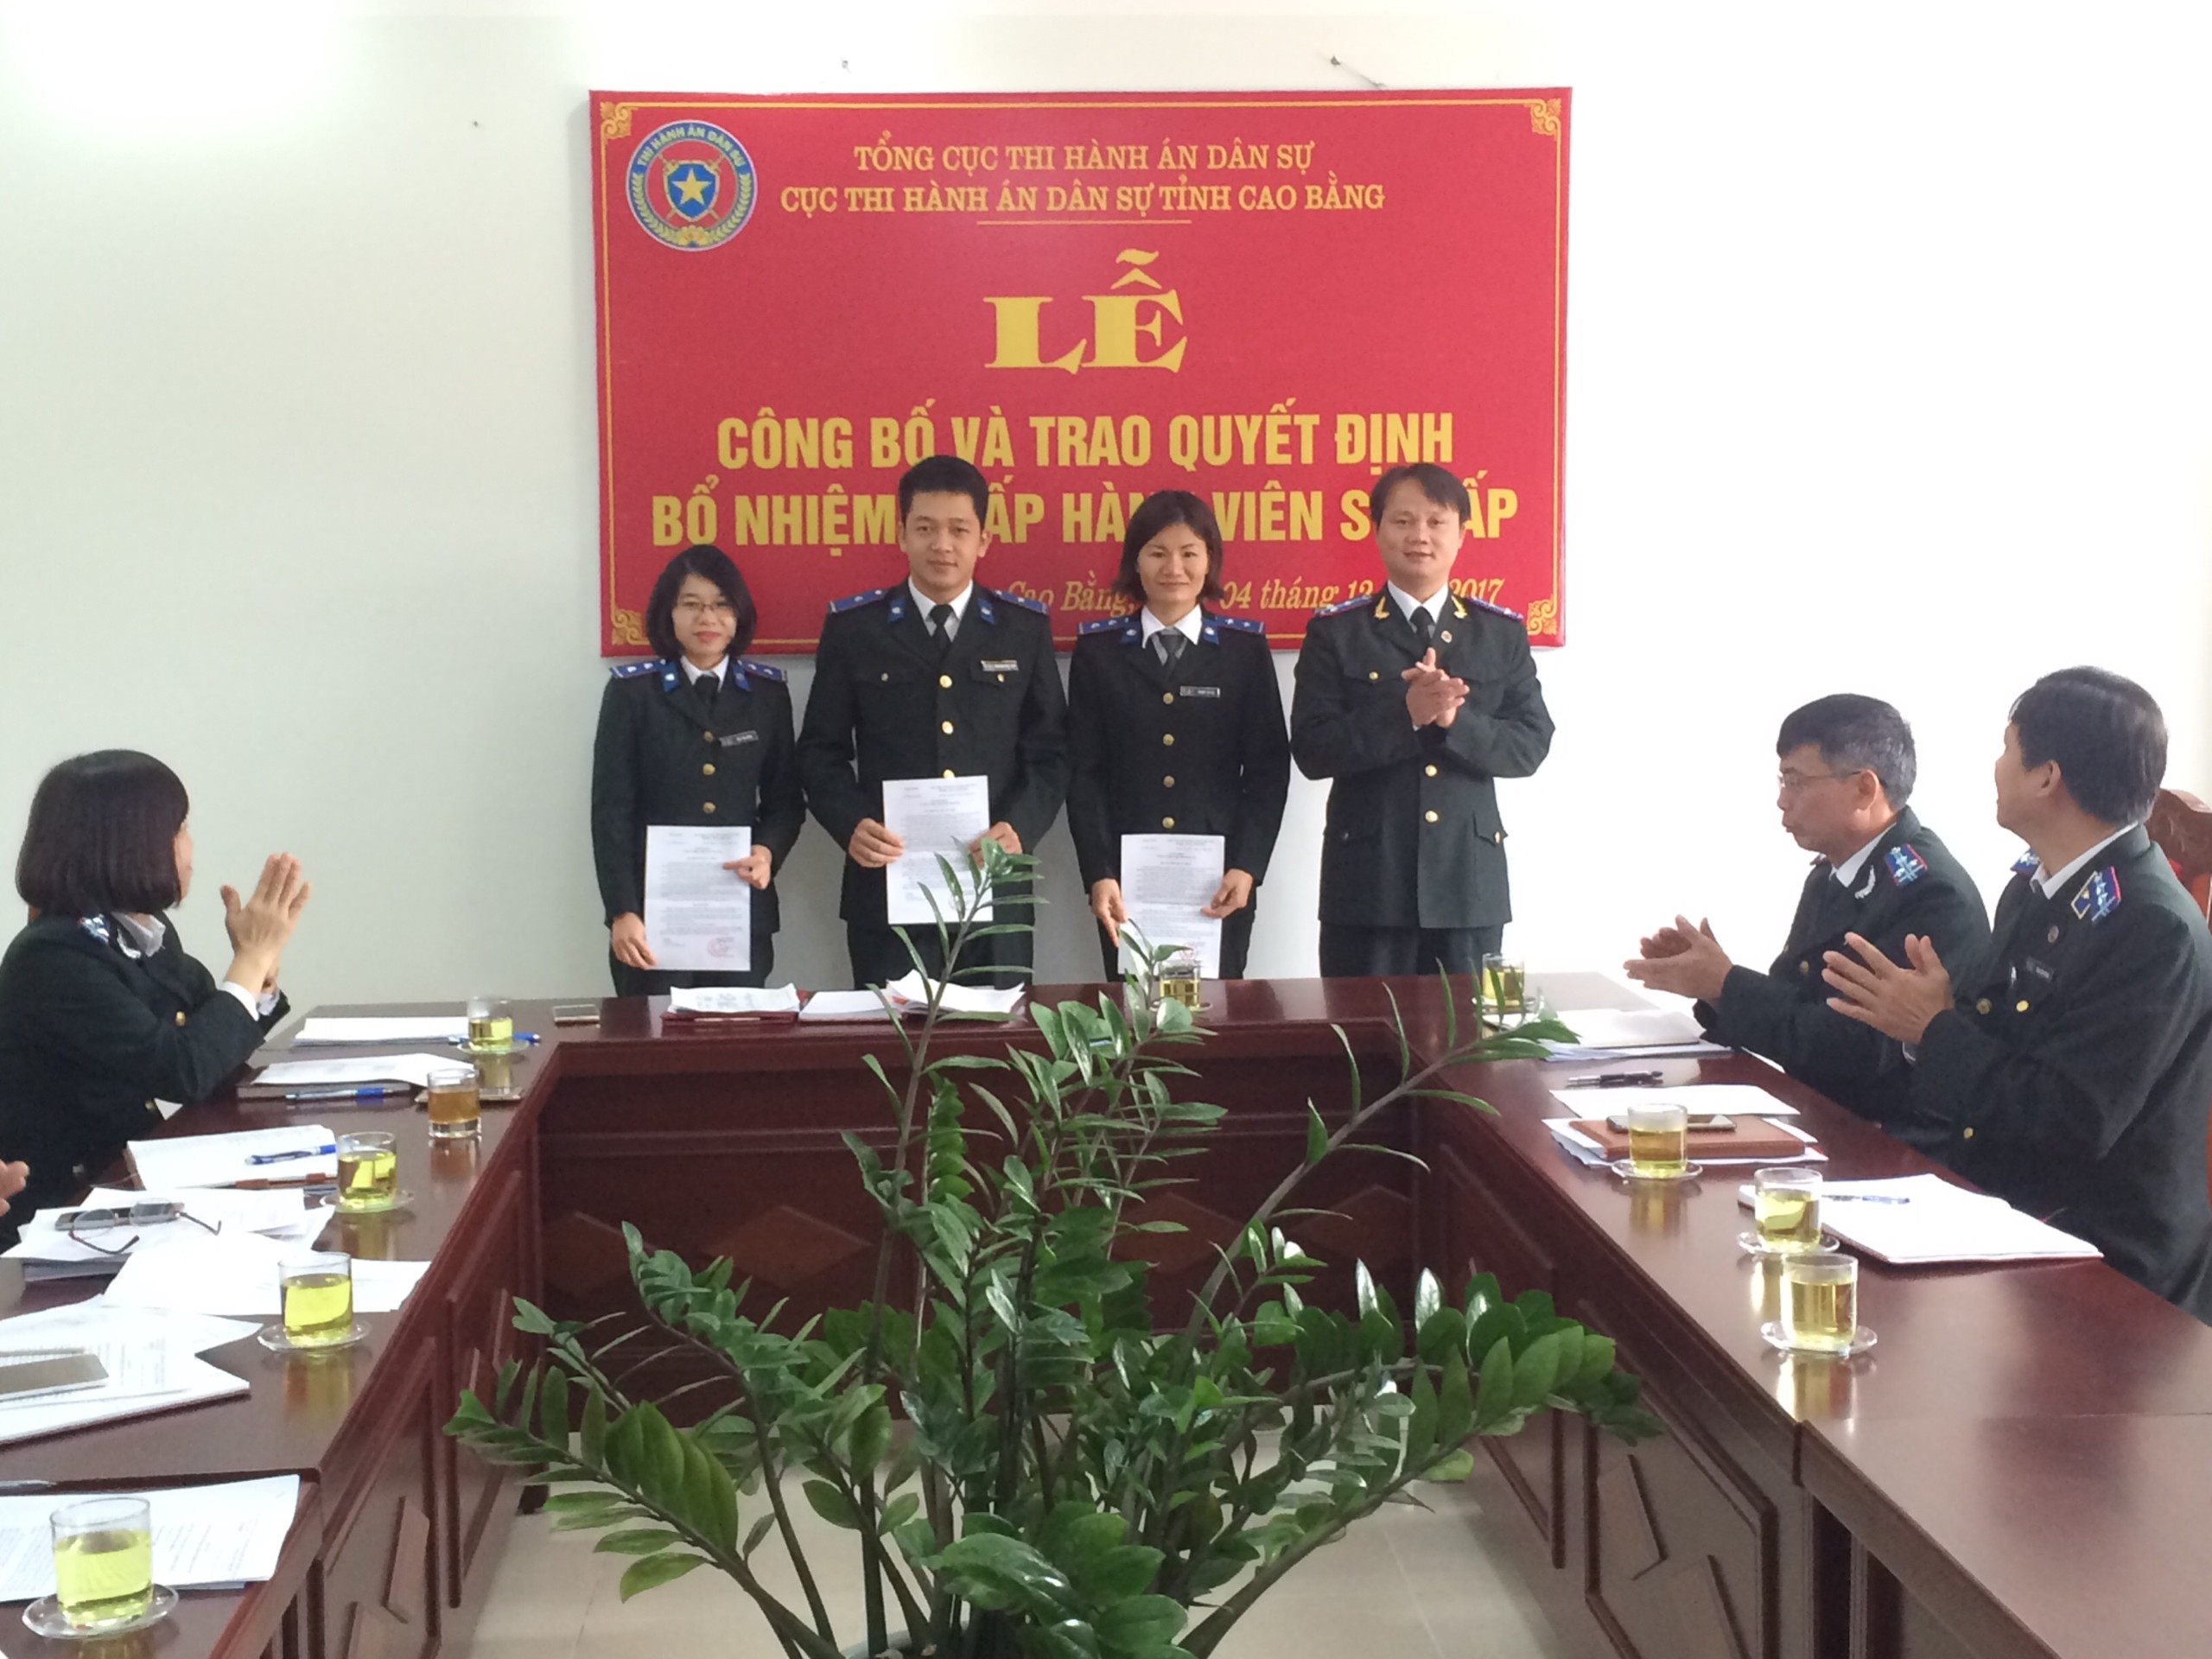 Cục Thi hành án dân sự tỉnh Cao Bằng tổ chức Lễ trao Quyết định bổ nhiệm Chấp hành viên sơ cấp năm 2017